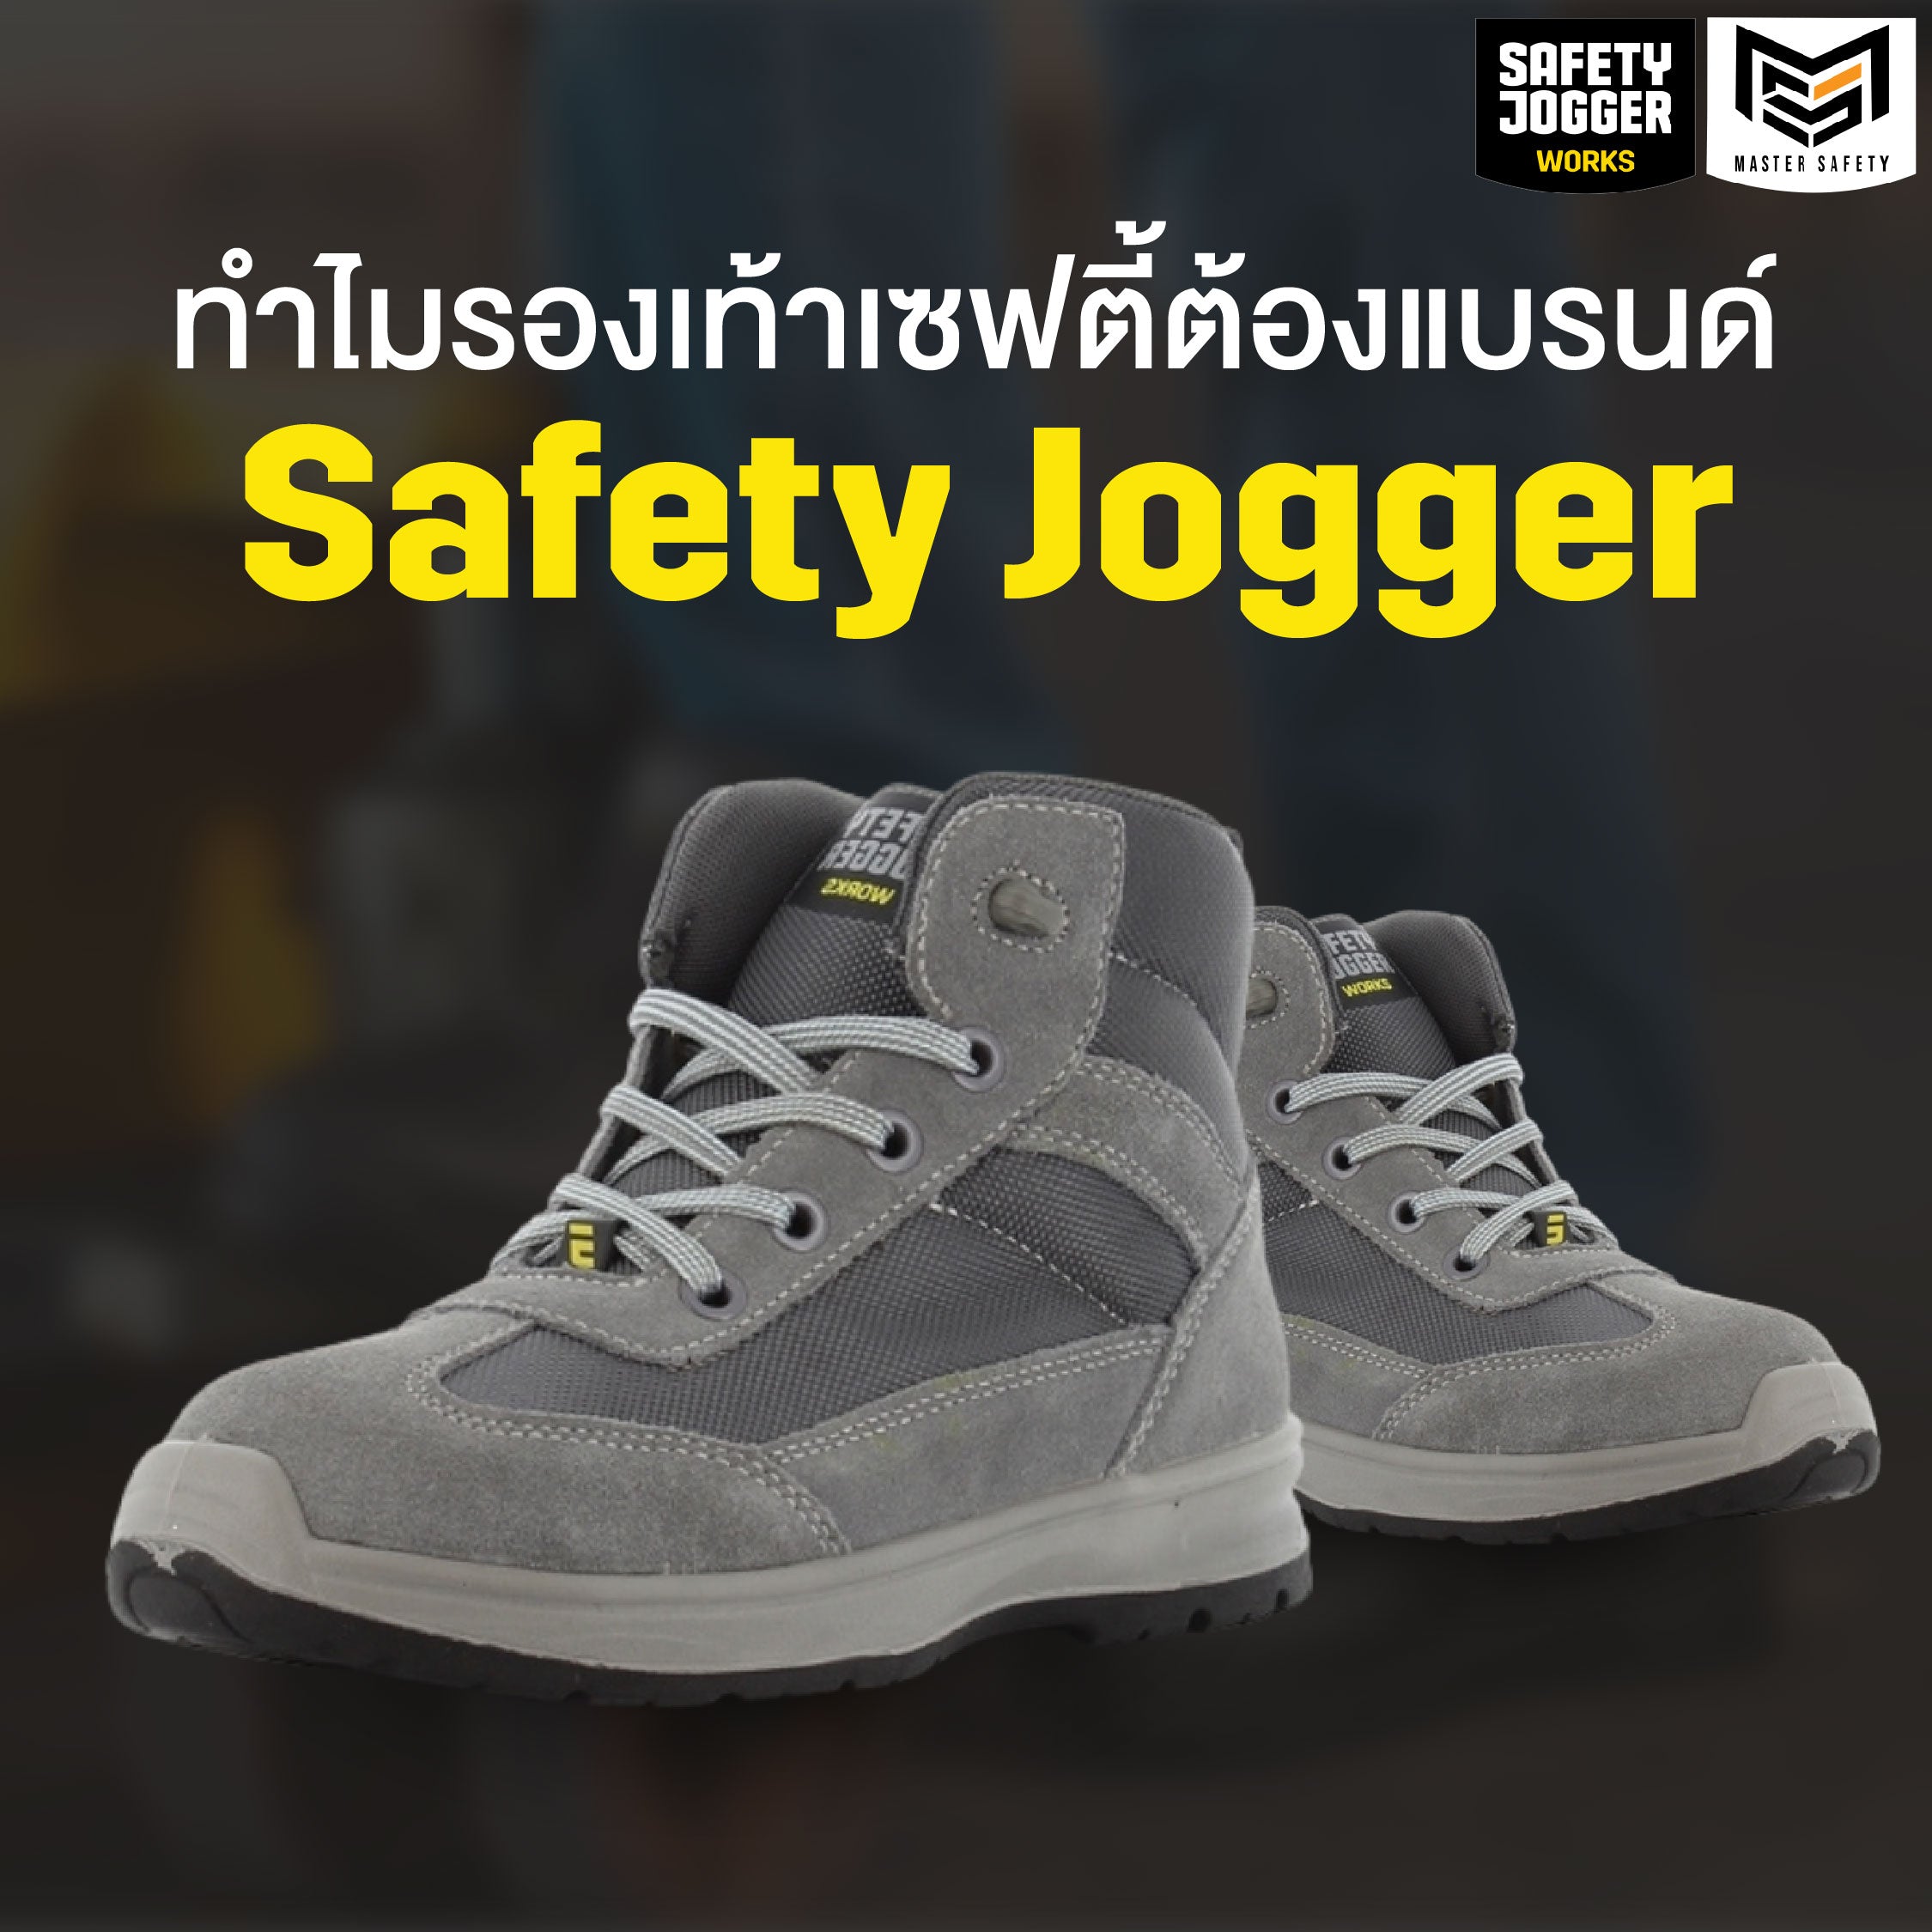 ทำไมรองเท้าเซฟตี้ต้องแบรนด์ Safety Jogger